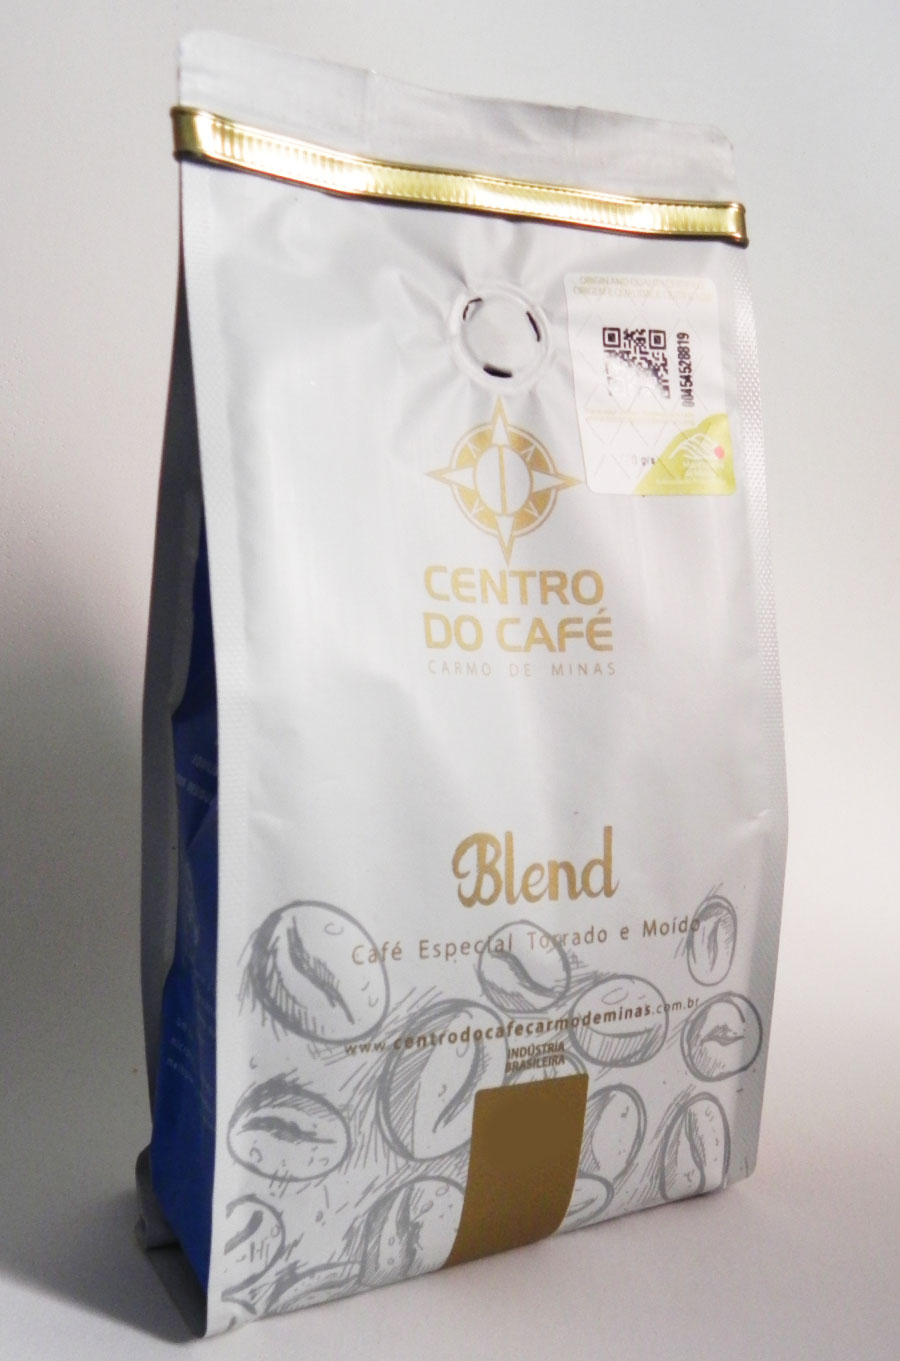 Café Blend torrado e moído - Centro do Café | Carmo de Minas (500g)